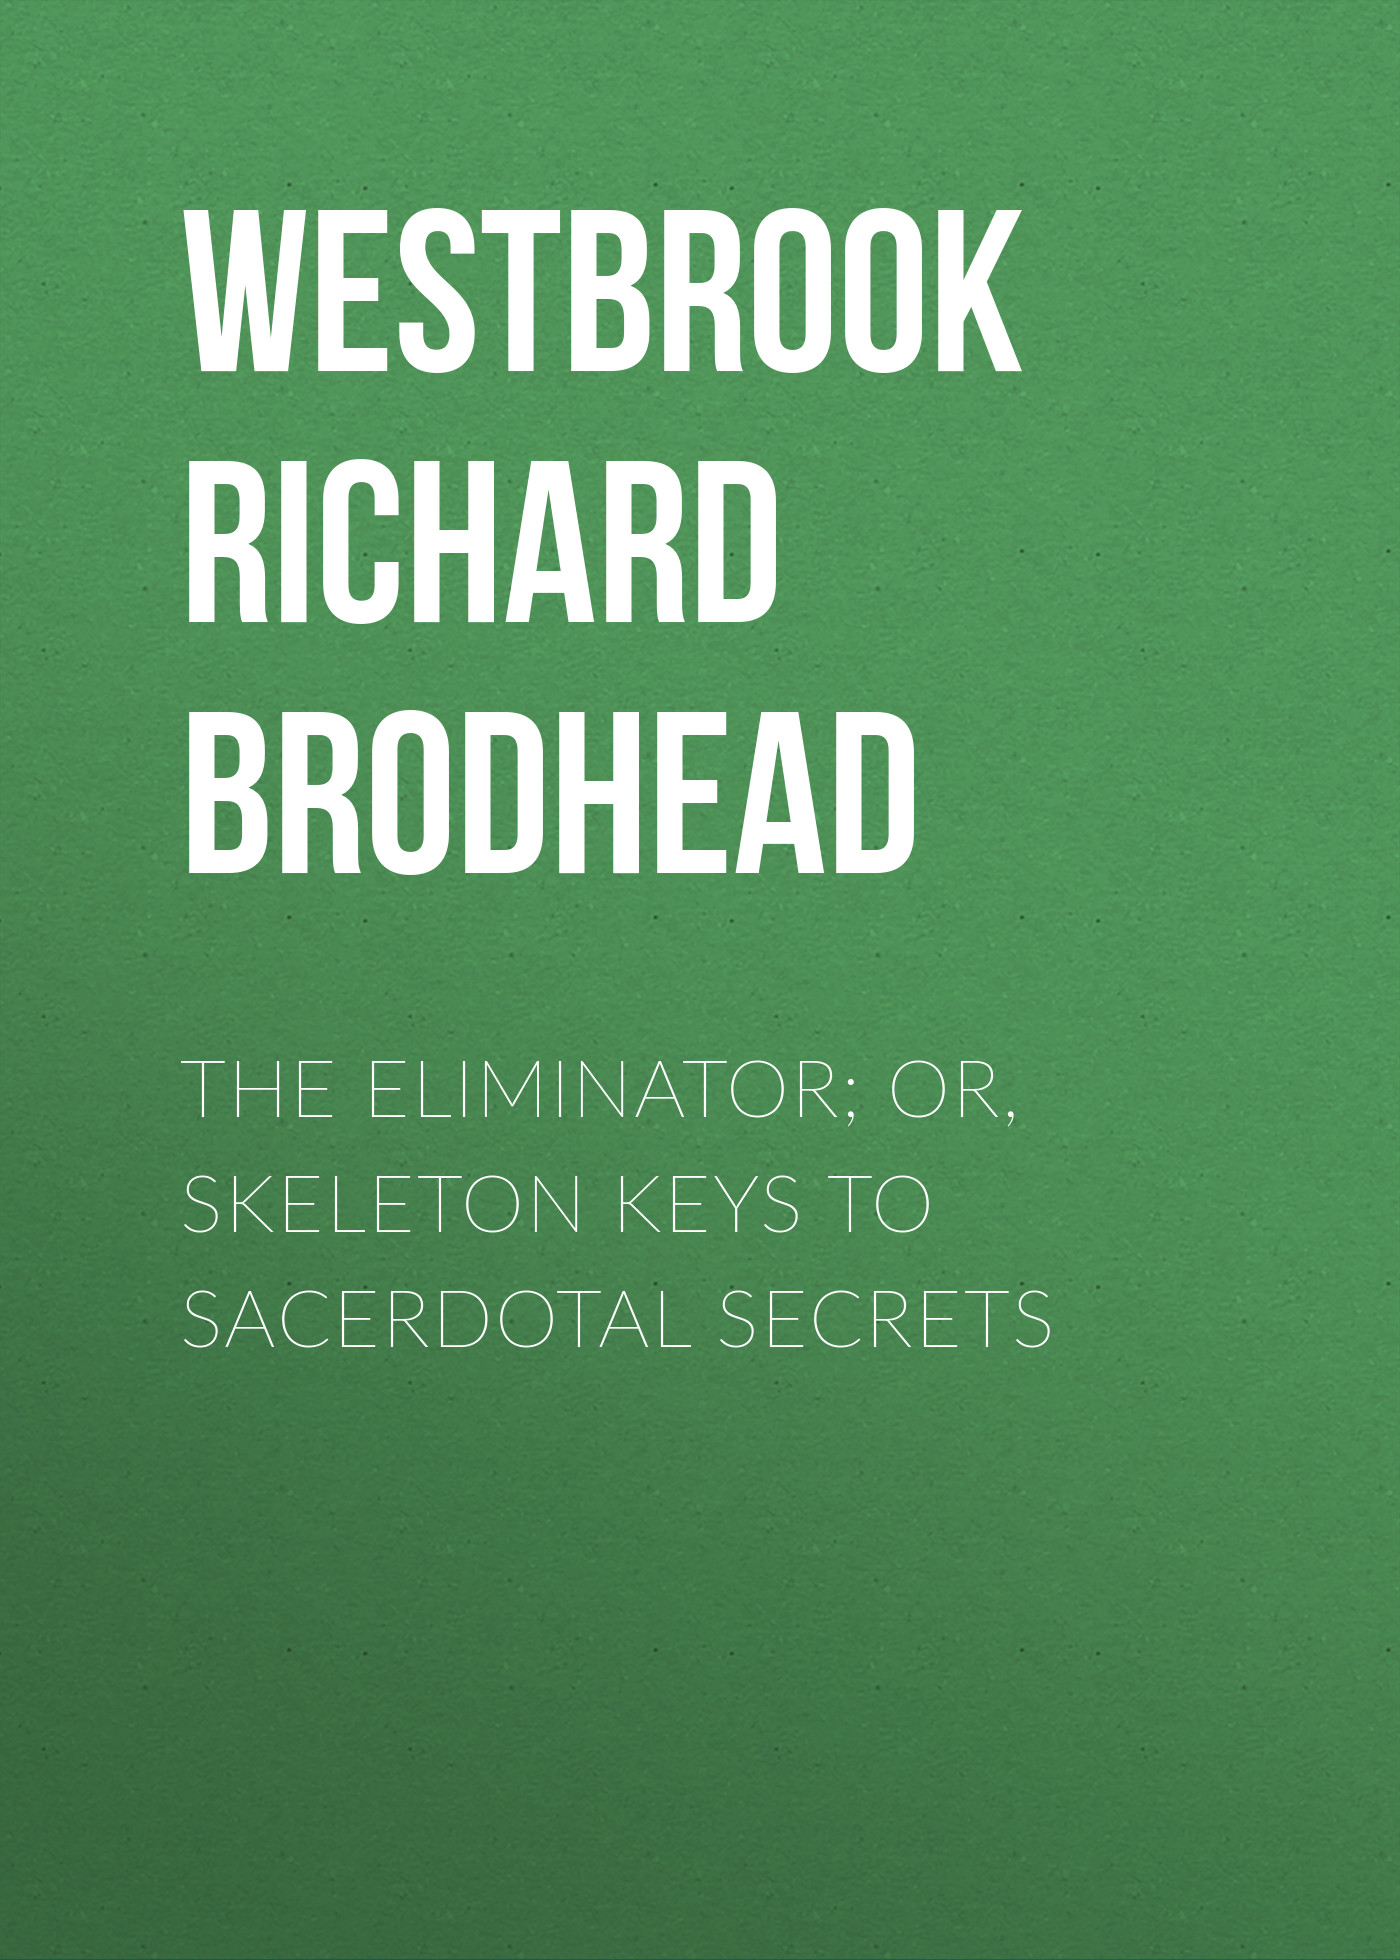 The Eliminator; or, Skeleton Keys to Sacerdotal Secrets